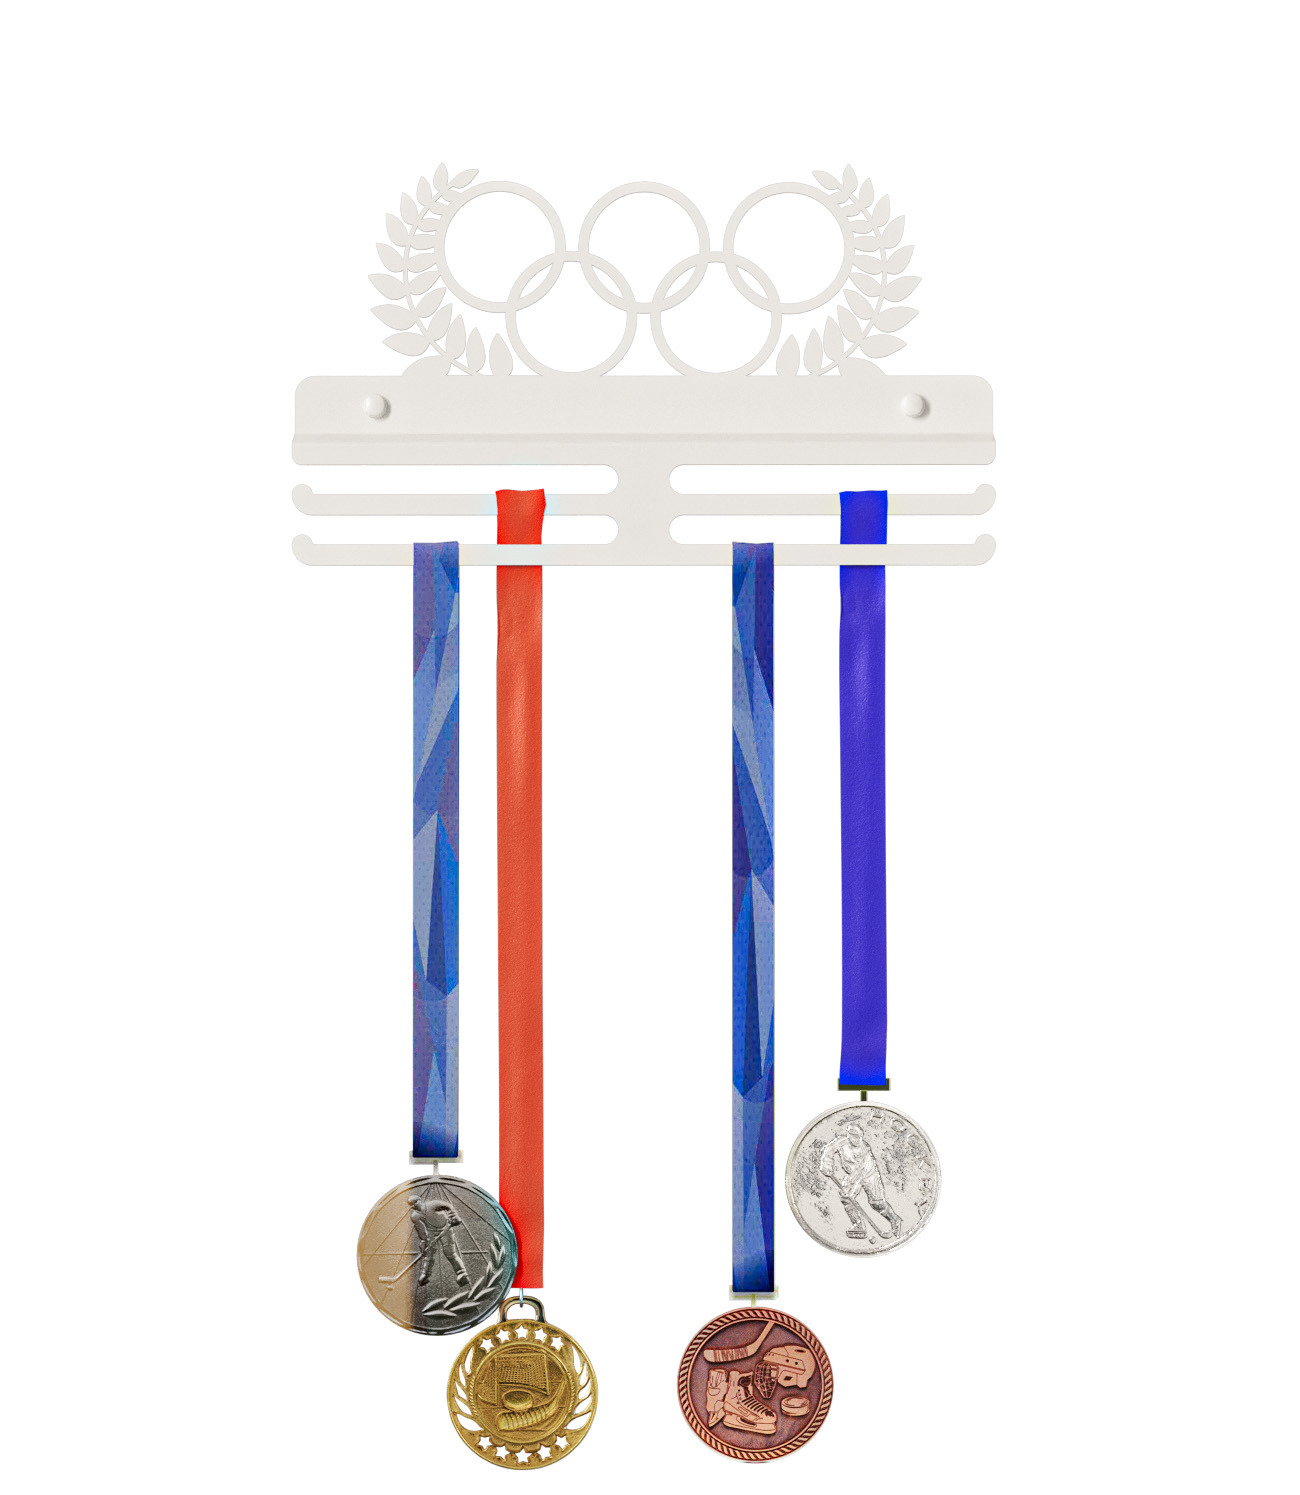 Вешалка для спортивных медалей на стену